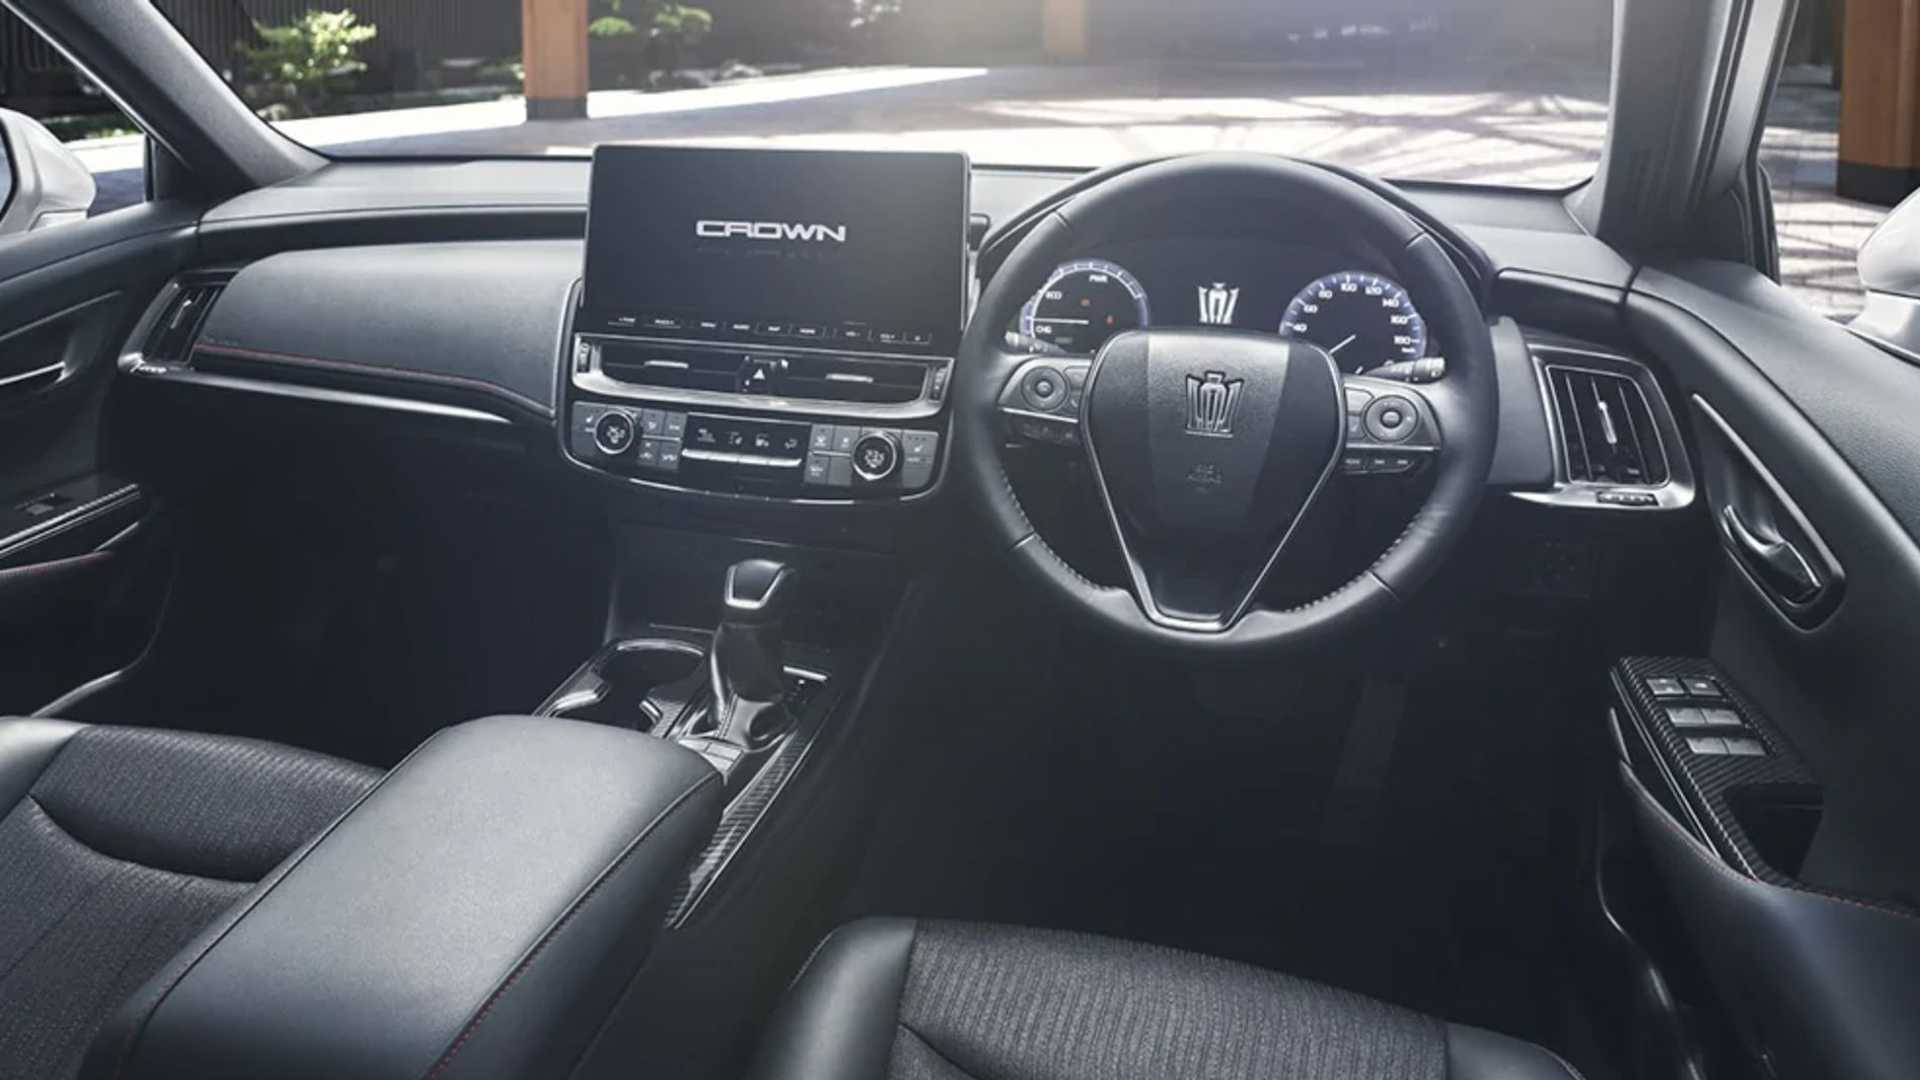 Bùng nổ xe gầm cao, Toyota lên kế hoạch làm SUV Crown Toyota Crown 2021 ra mắt với màn hình cỡ lớn, giá từ 47.000 USD 2021-toyota-crown-update-1.jpg